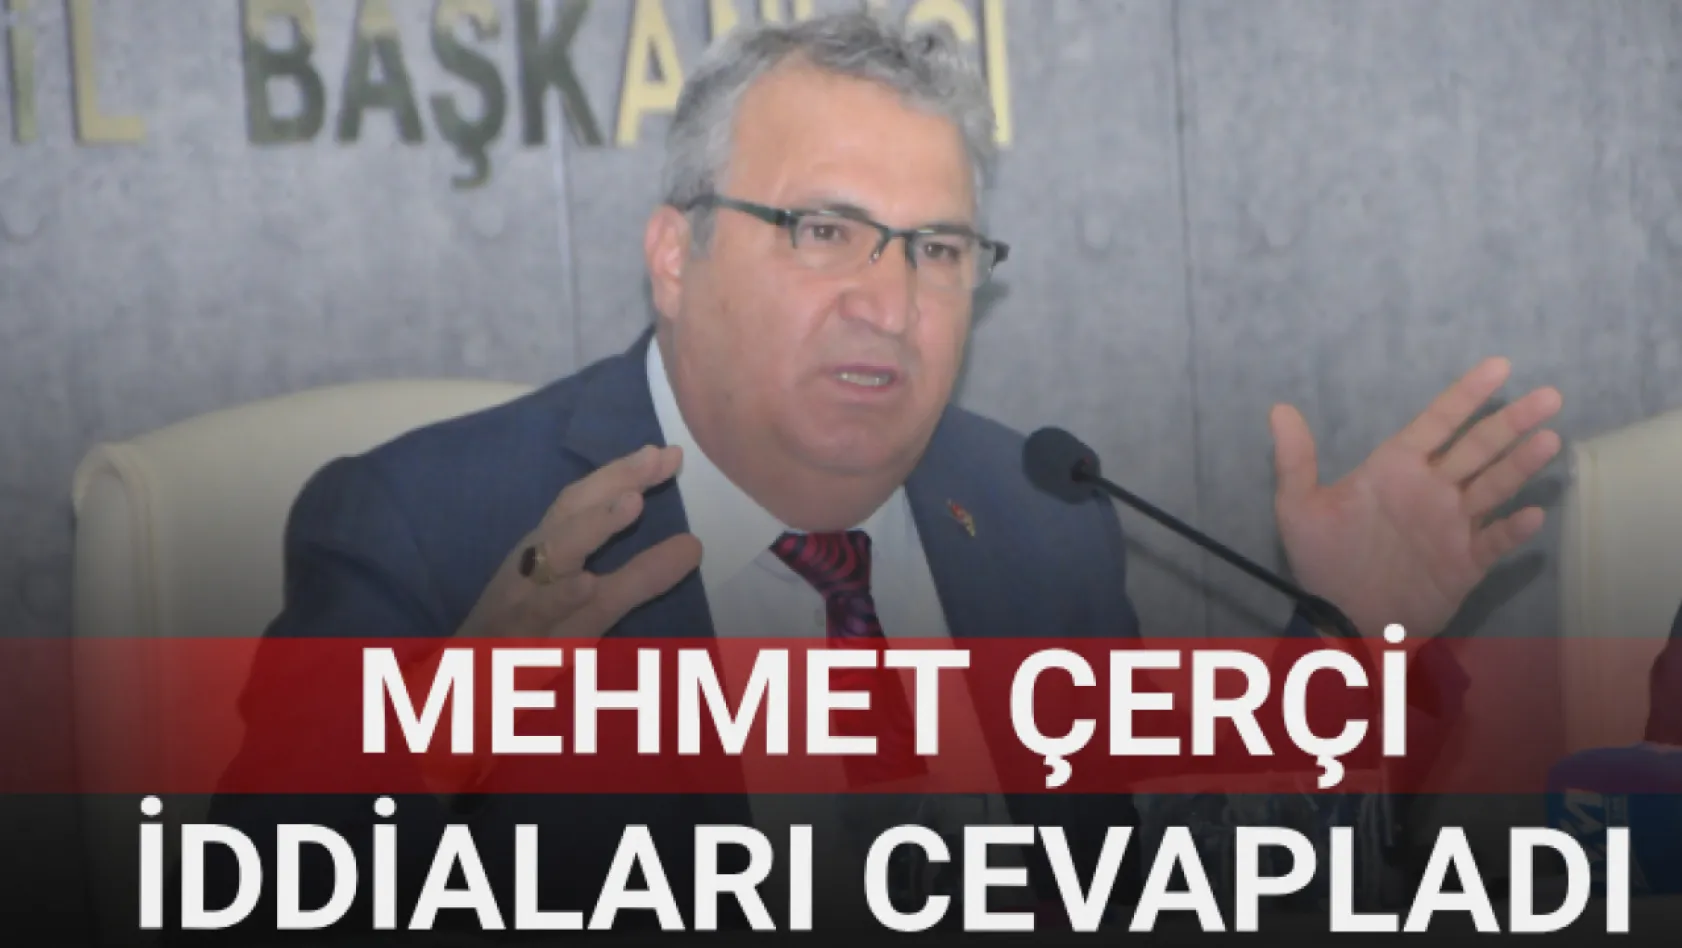 Mehmet Çerçi iddiaları cevapladı...